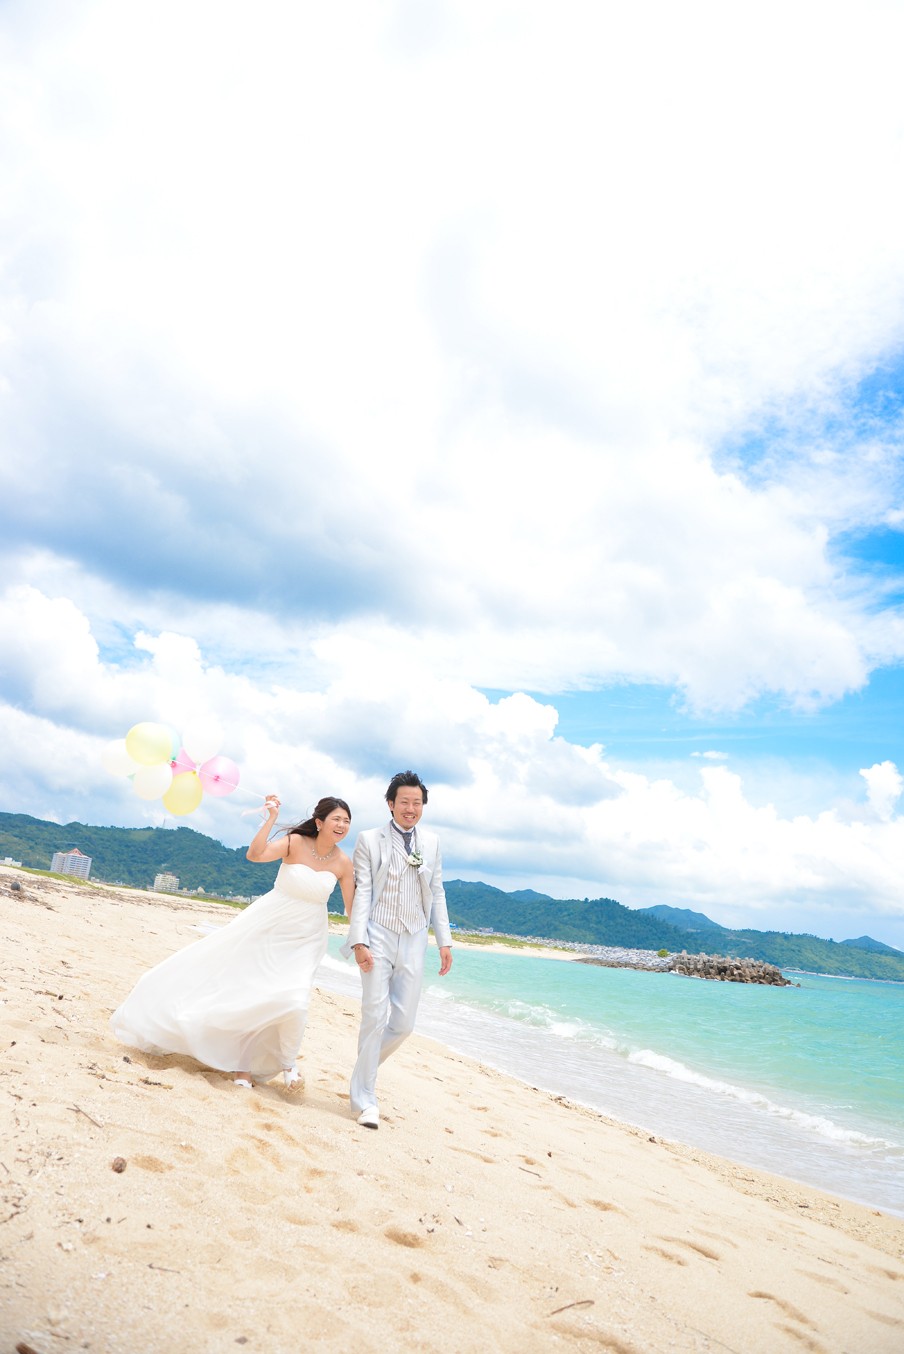 「沖縄の風を感じて」 名護ビーチ(名護市)